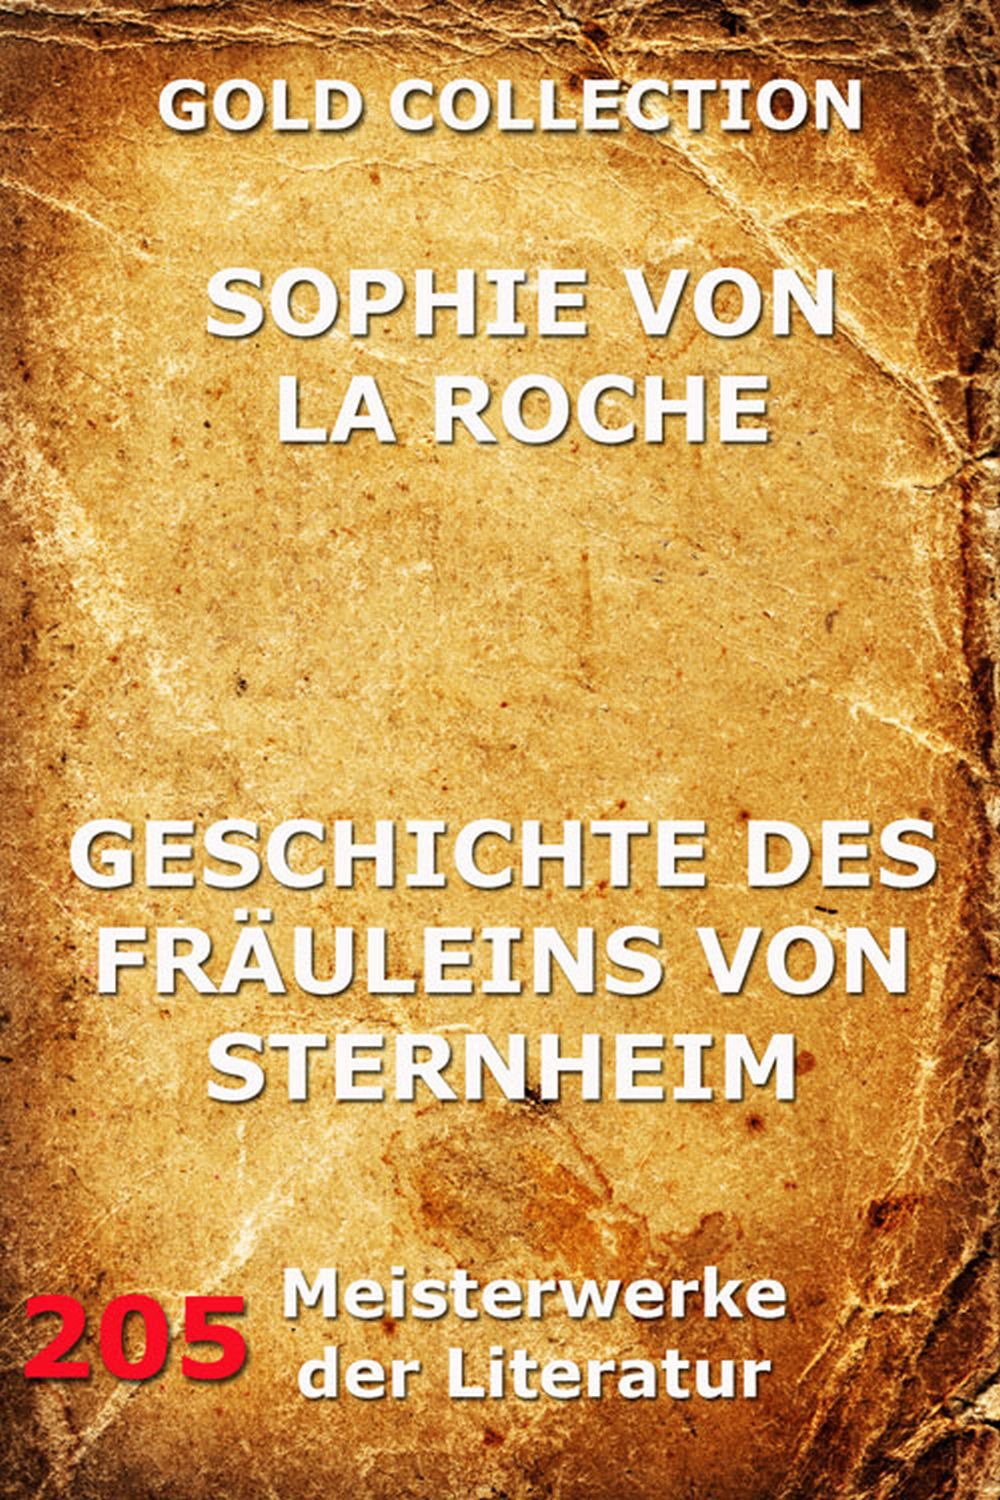 Geschichte des Fräuleins von Sternheim - Sophie von La Roche